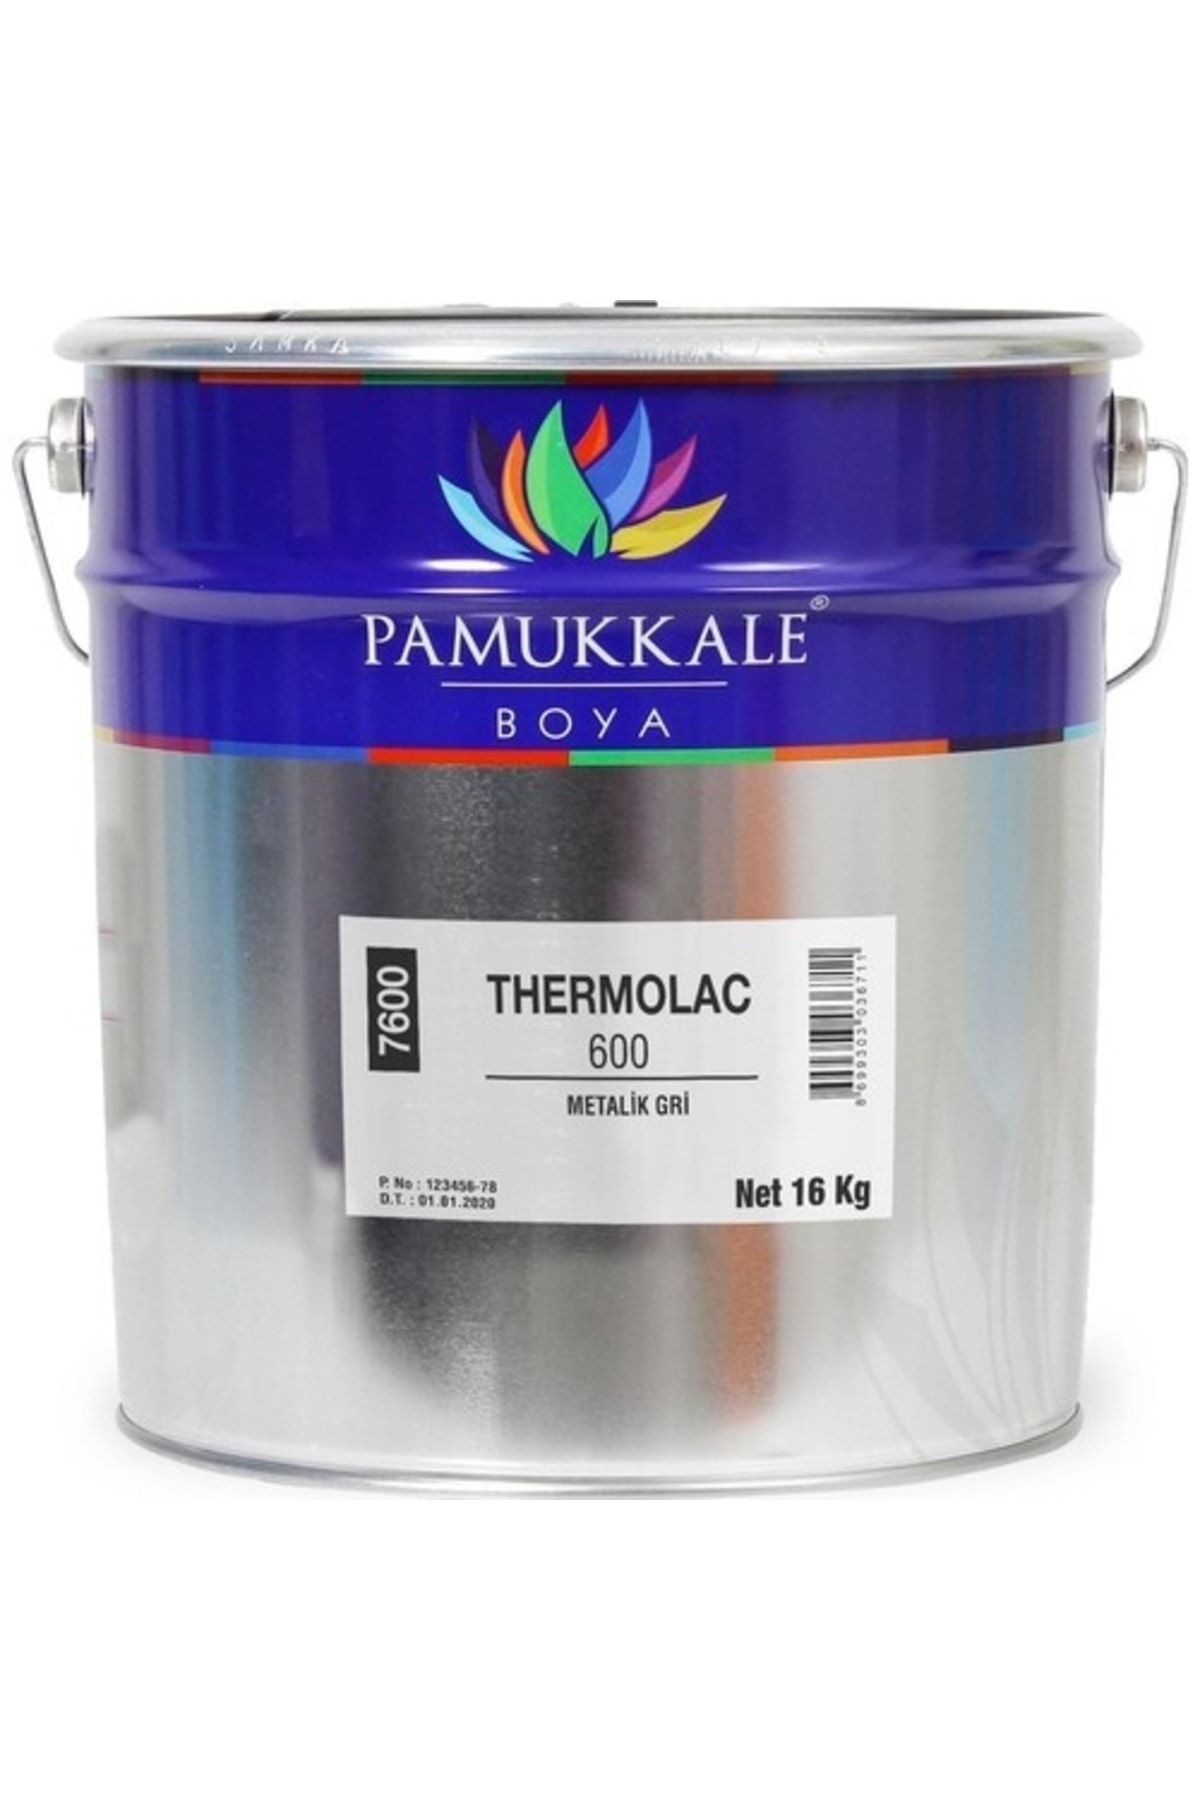 PAMUKKALE BOYA Pamukkale Thermolac 600 Metalik Gri 15 Kg